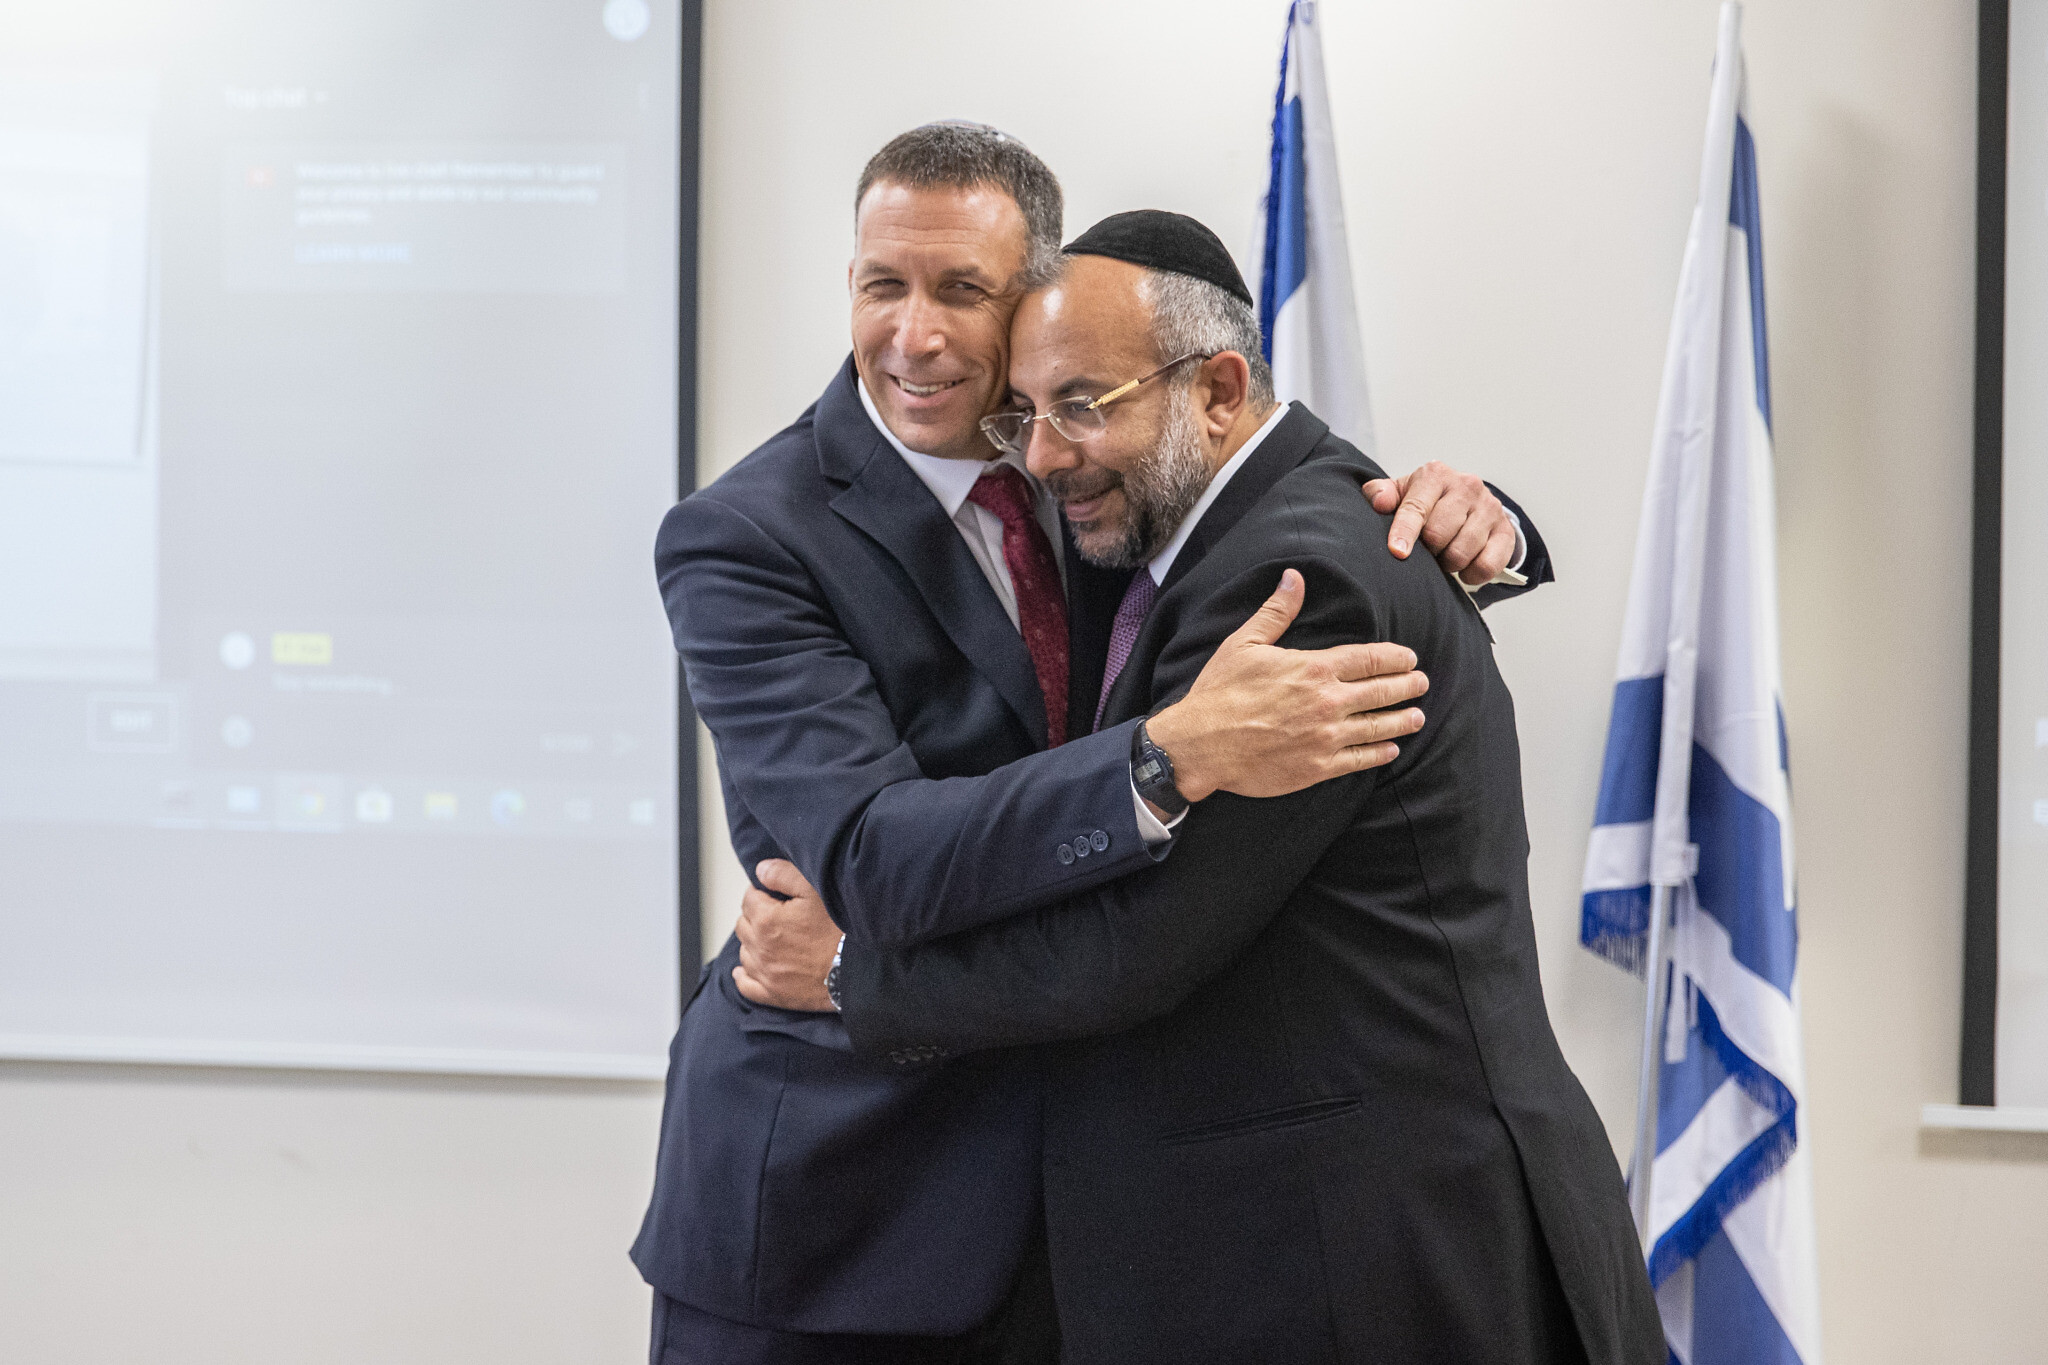 Le nouveau ministre des Services religieux Matan Kahana (Yamina) avec le ministre sortant Yaakov Avitan (Shas), lors de la cérémonie de passation du pouvoir au ministère, le 14 juin 2021. (Crédit : Yonatan Sindel/Flash90)